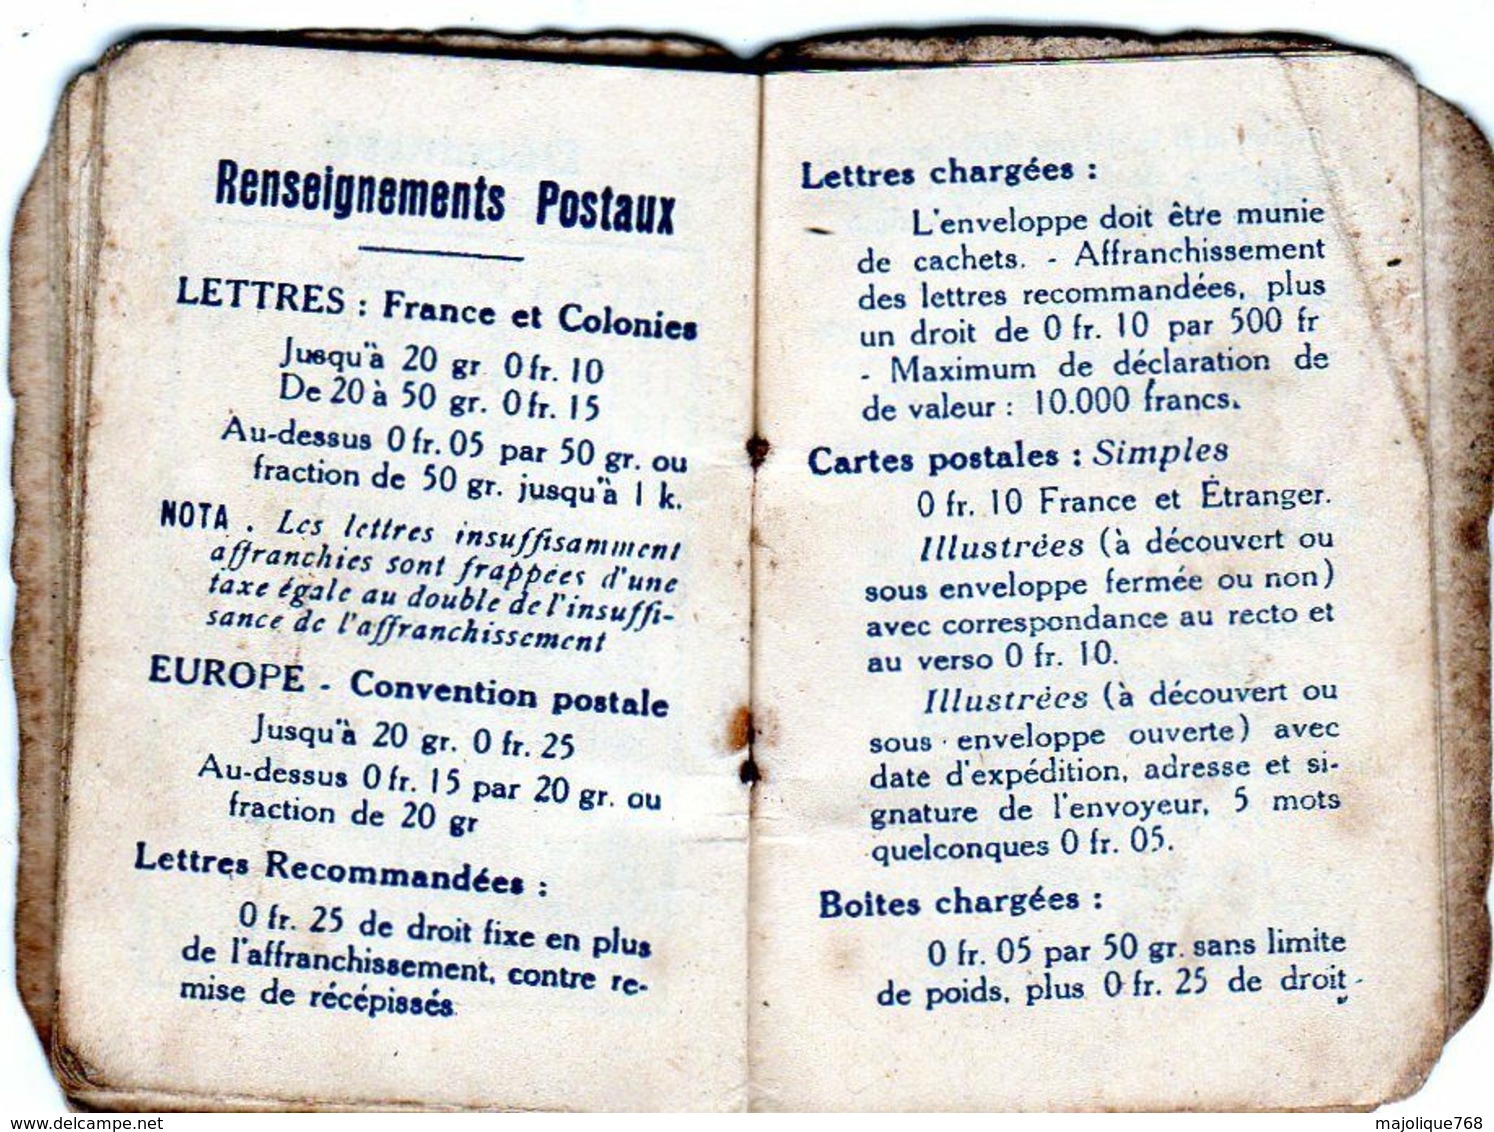 petit calendrier 1916 de la poste - dimension - 4 X 5,5 cm -